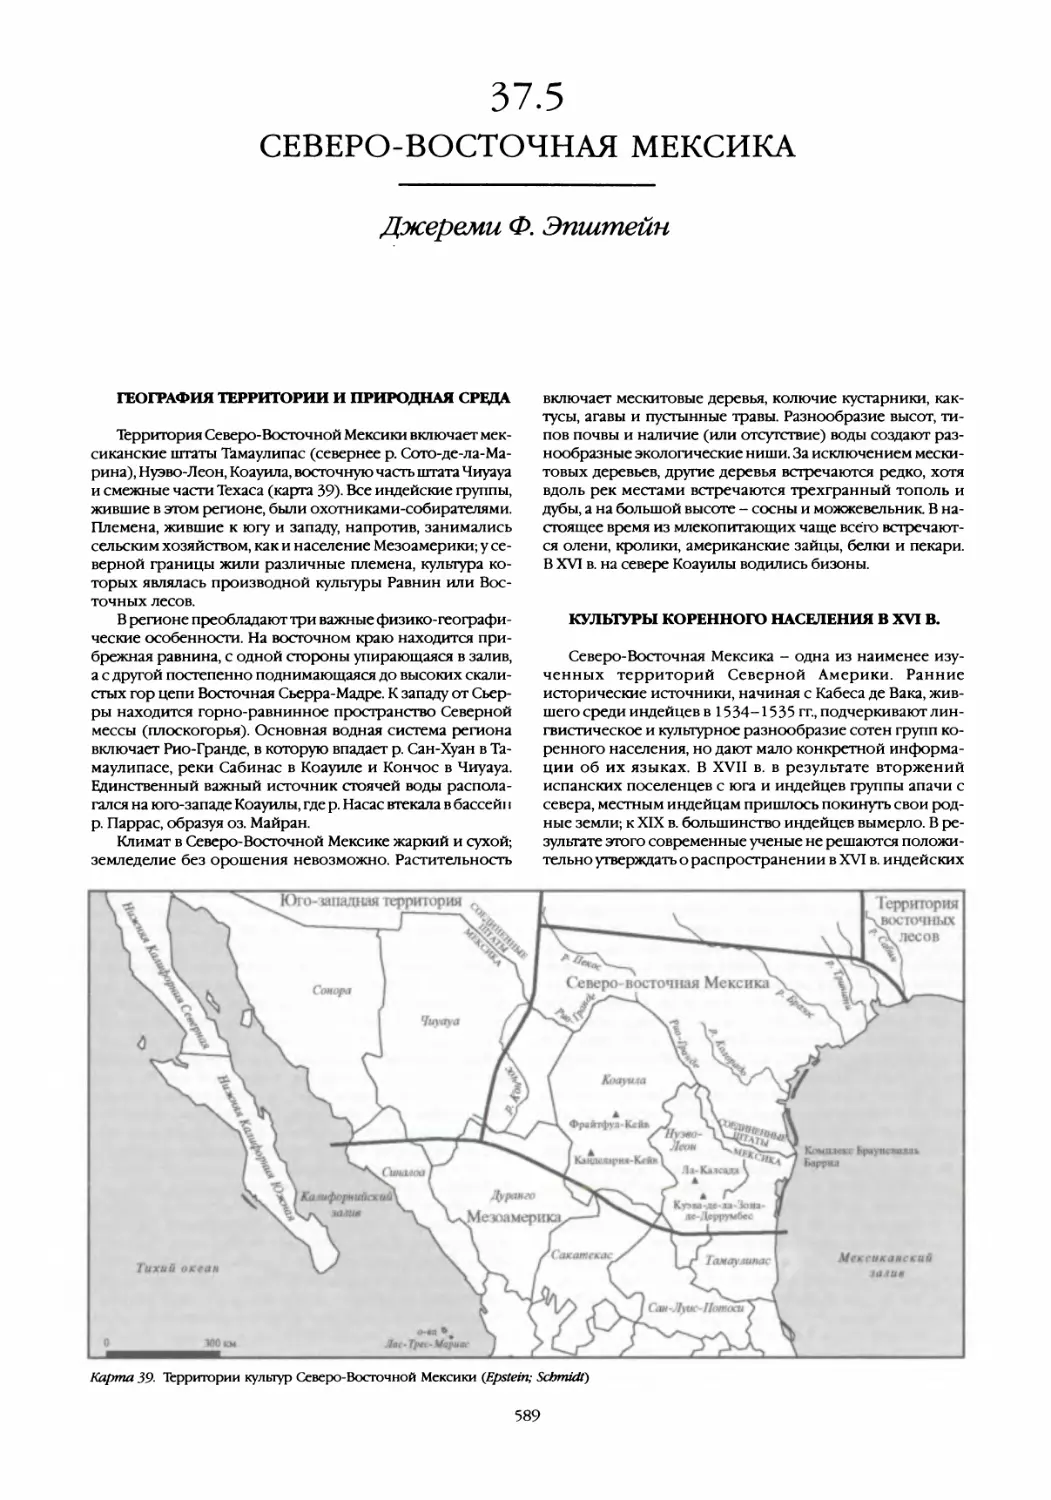 37.5 Северо-восточная Мексика
Культуры коренного населения в XVI в